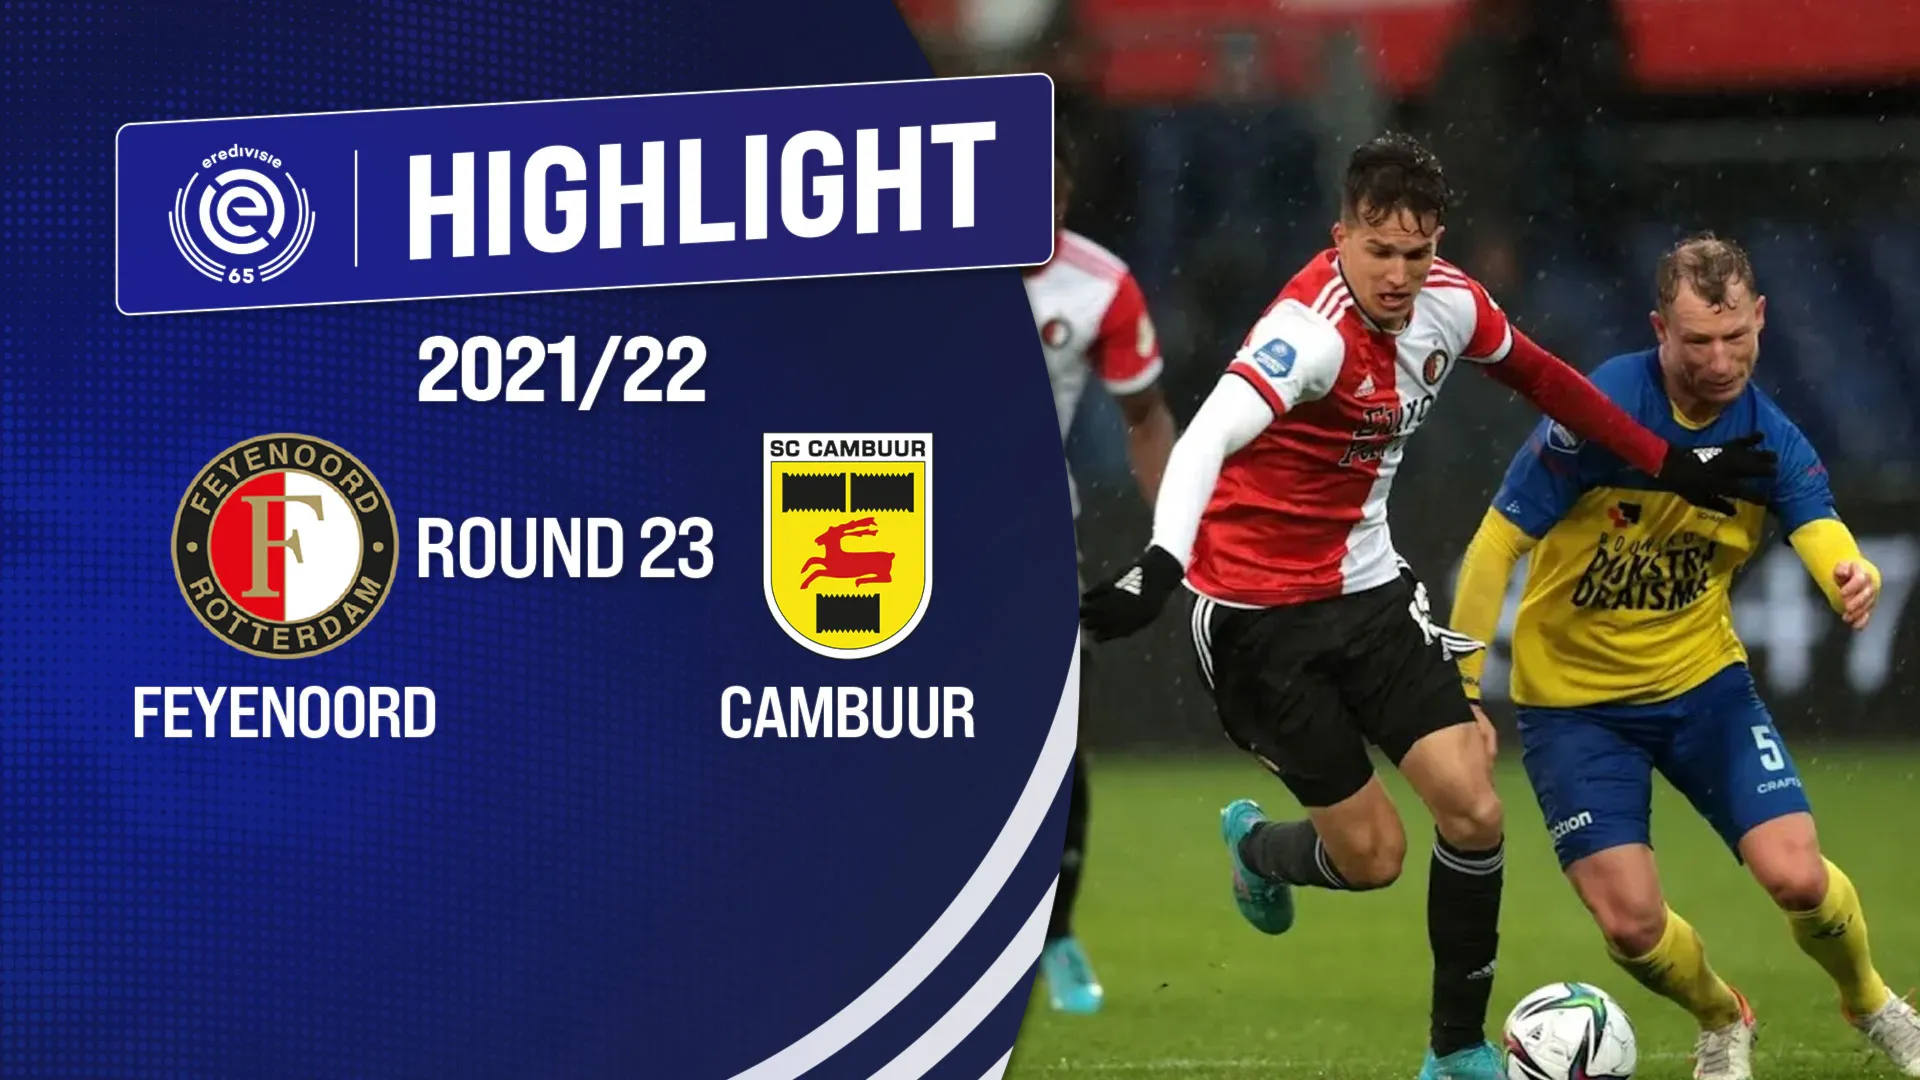 Highlights Feyenoord vs Cambuur (Vòng 23 - Giải VĐQG Hà Lan 2021/22)